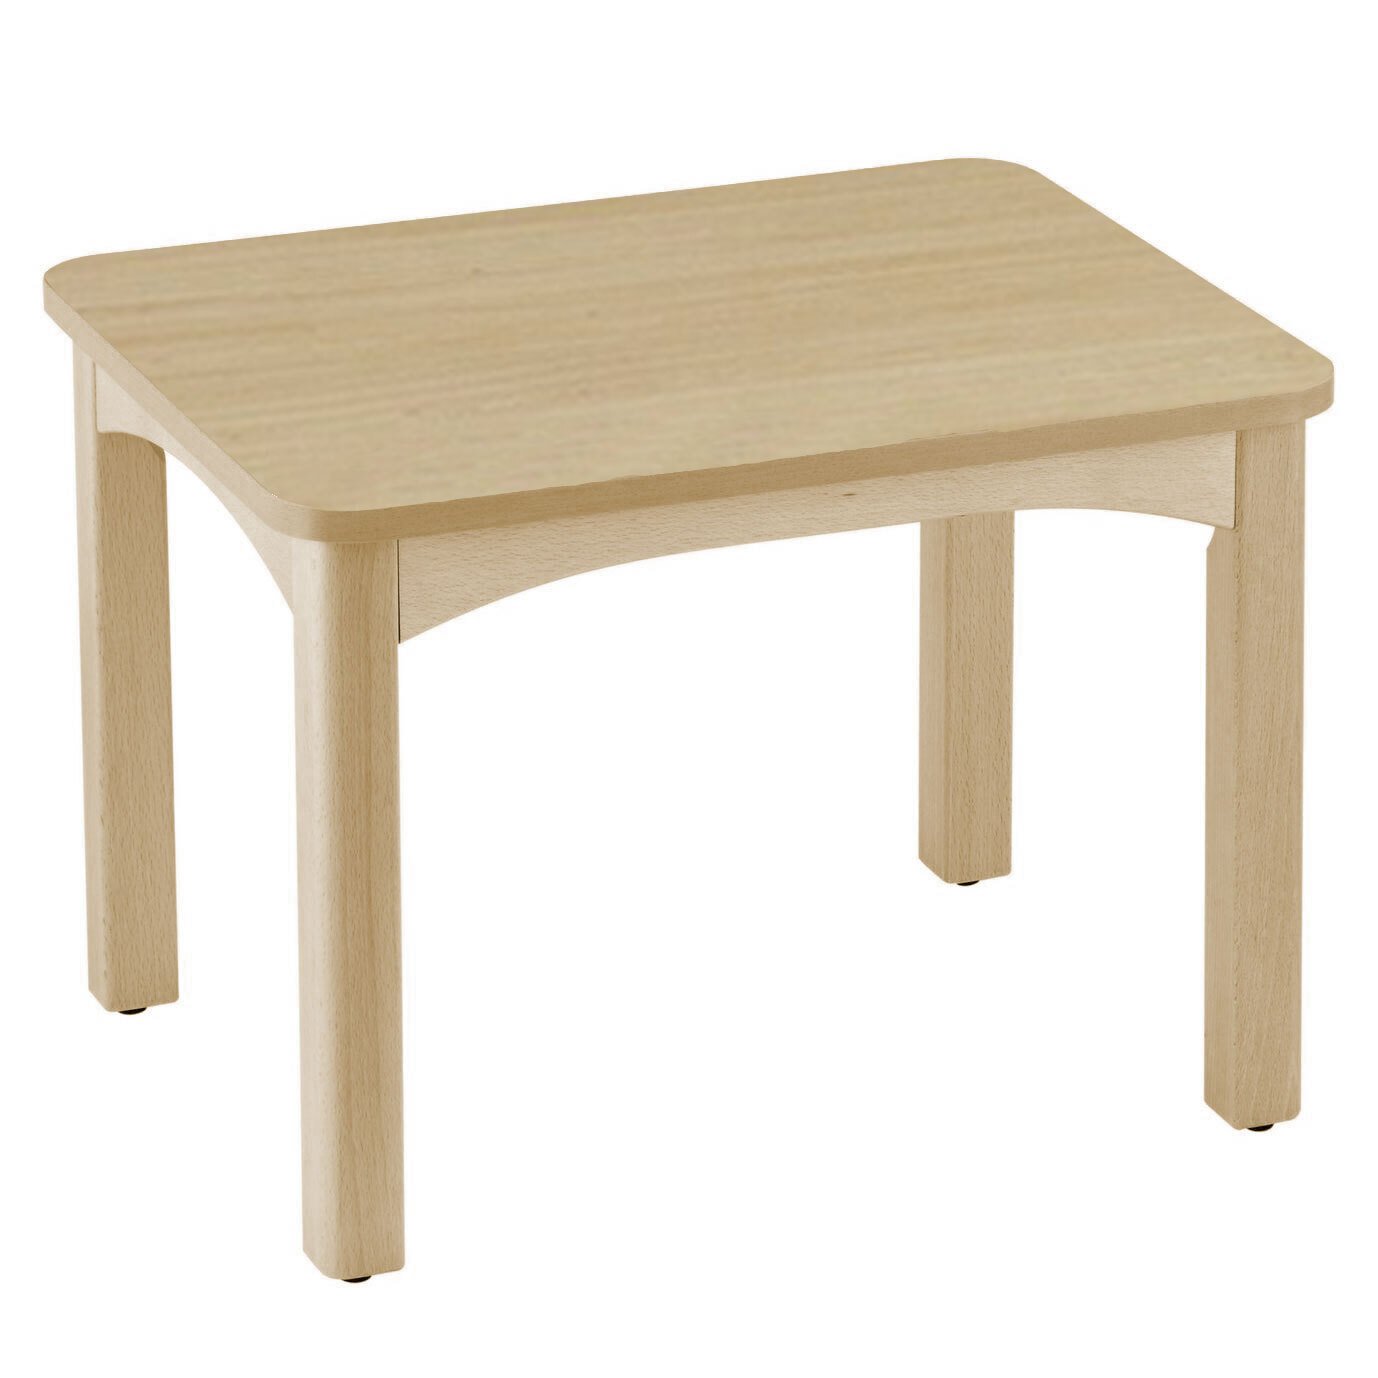 Table en bois pour crèche 60 x 50 cm t0 vernis